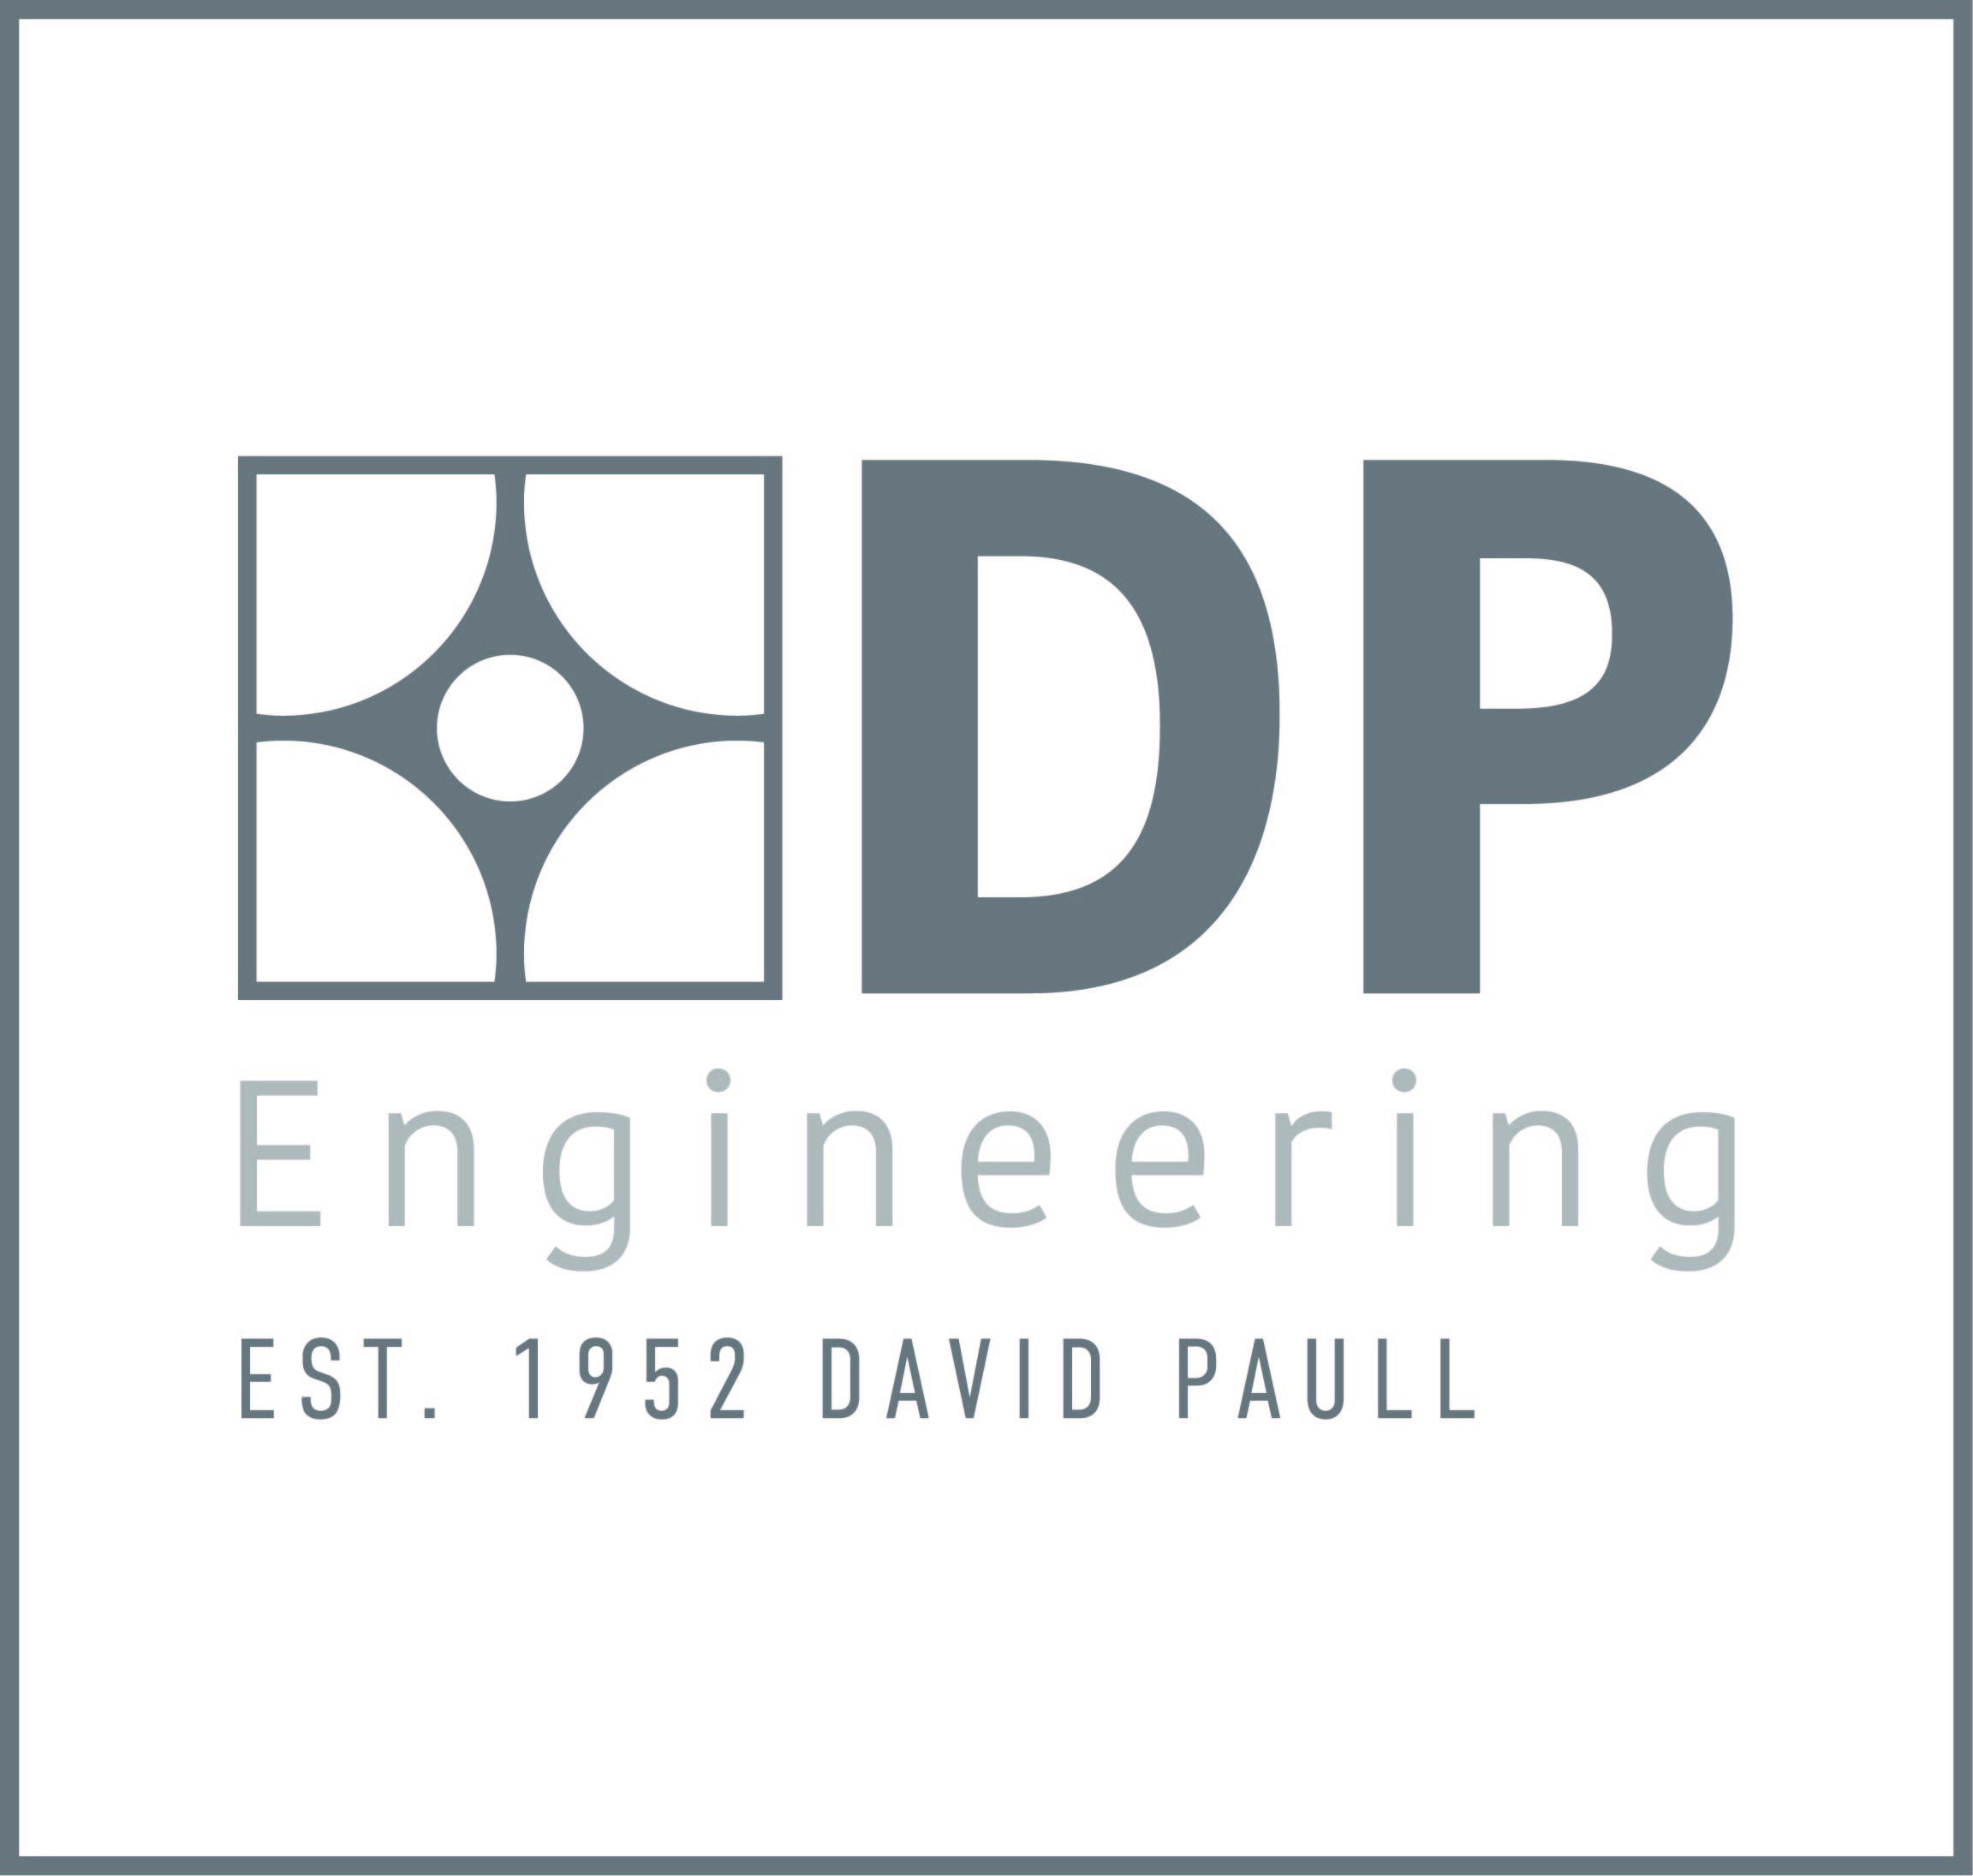 DP Engineering